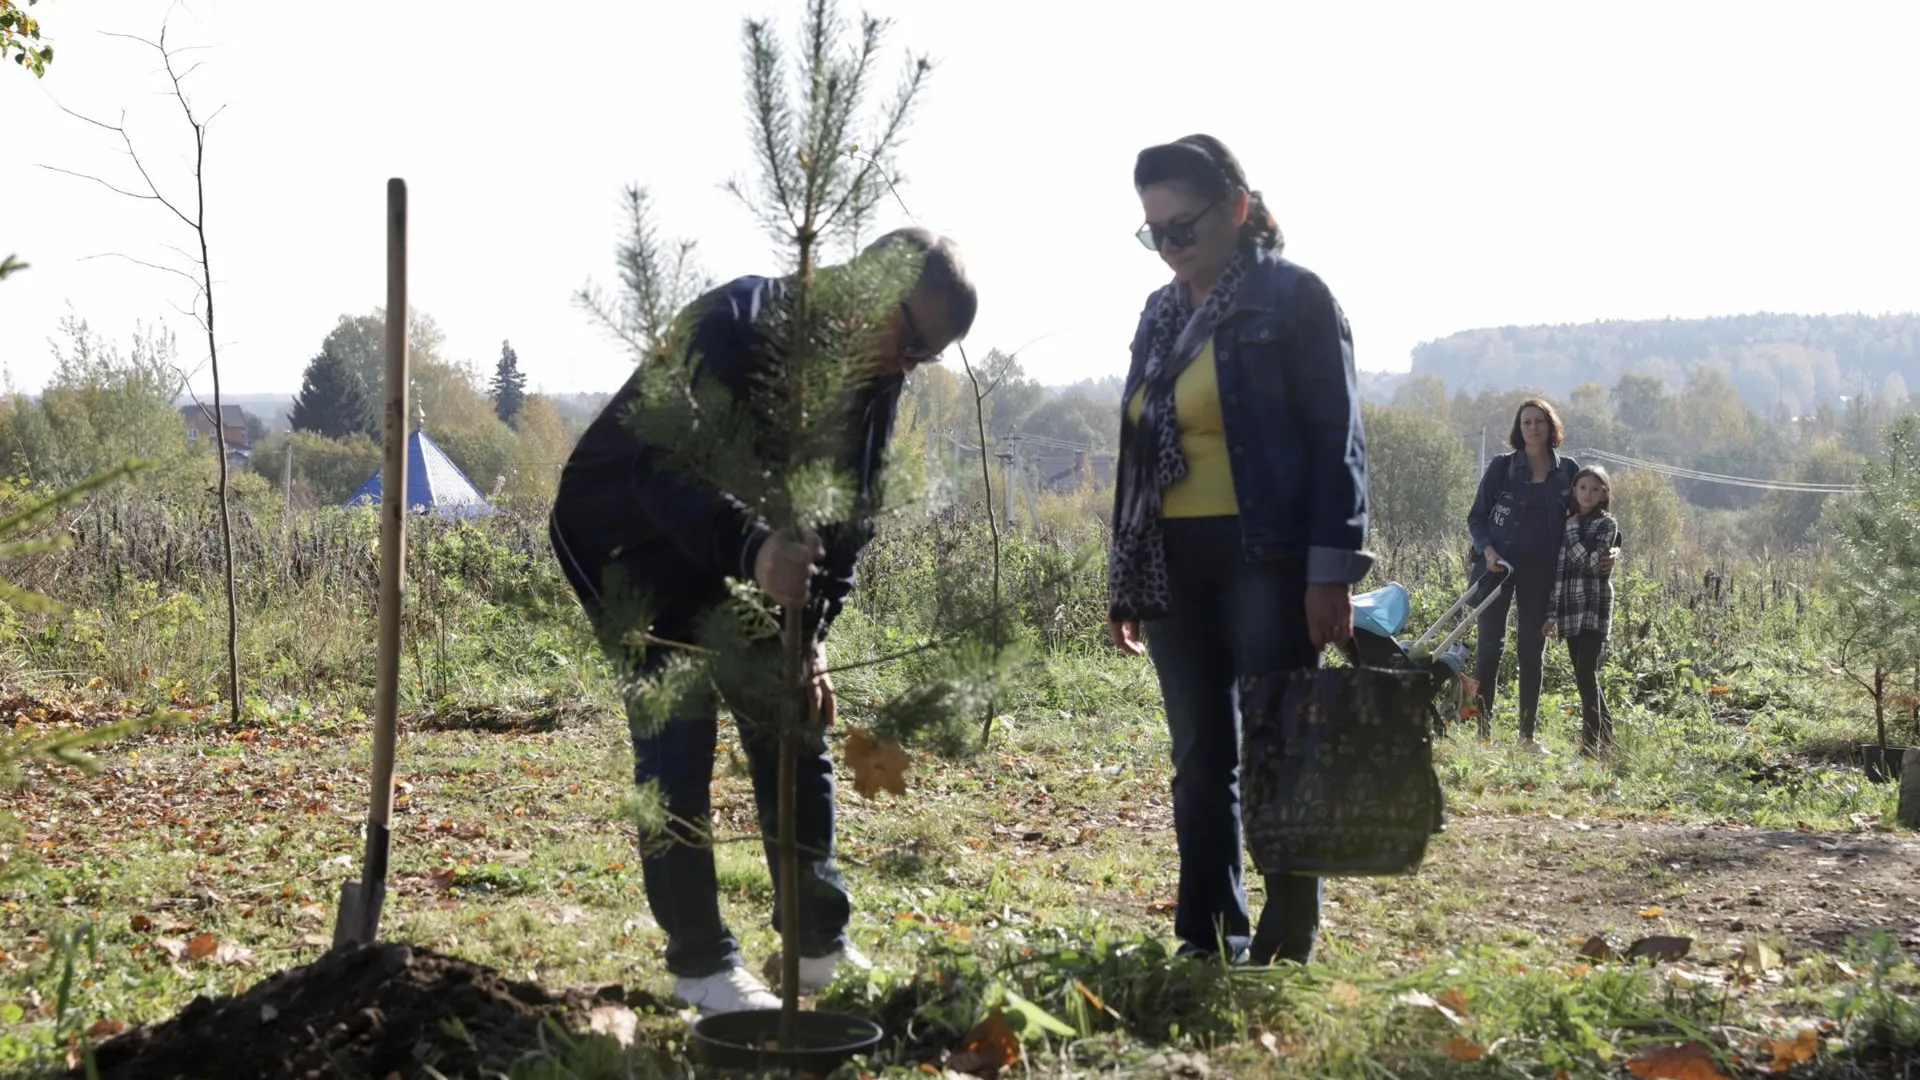 Более 50 деревьев высадили на акции «Наш лес» вблизи Спасской церкви в Солнечногорске